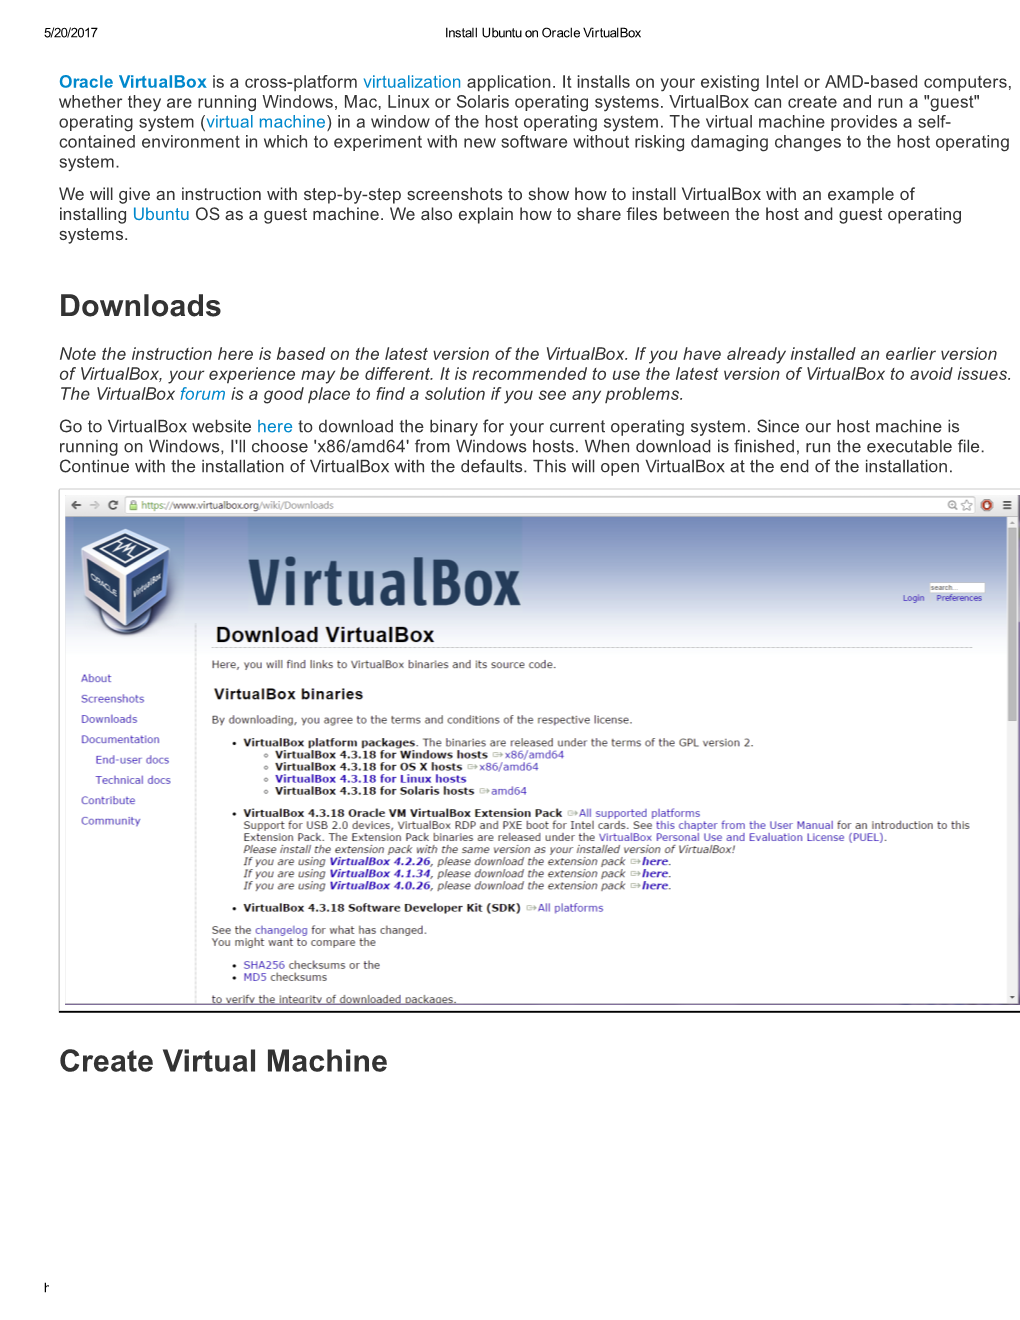 Downloads Create Virtual Machine